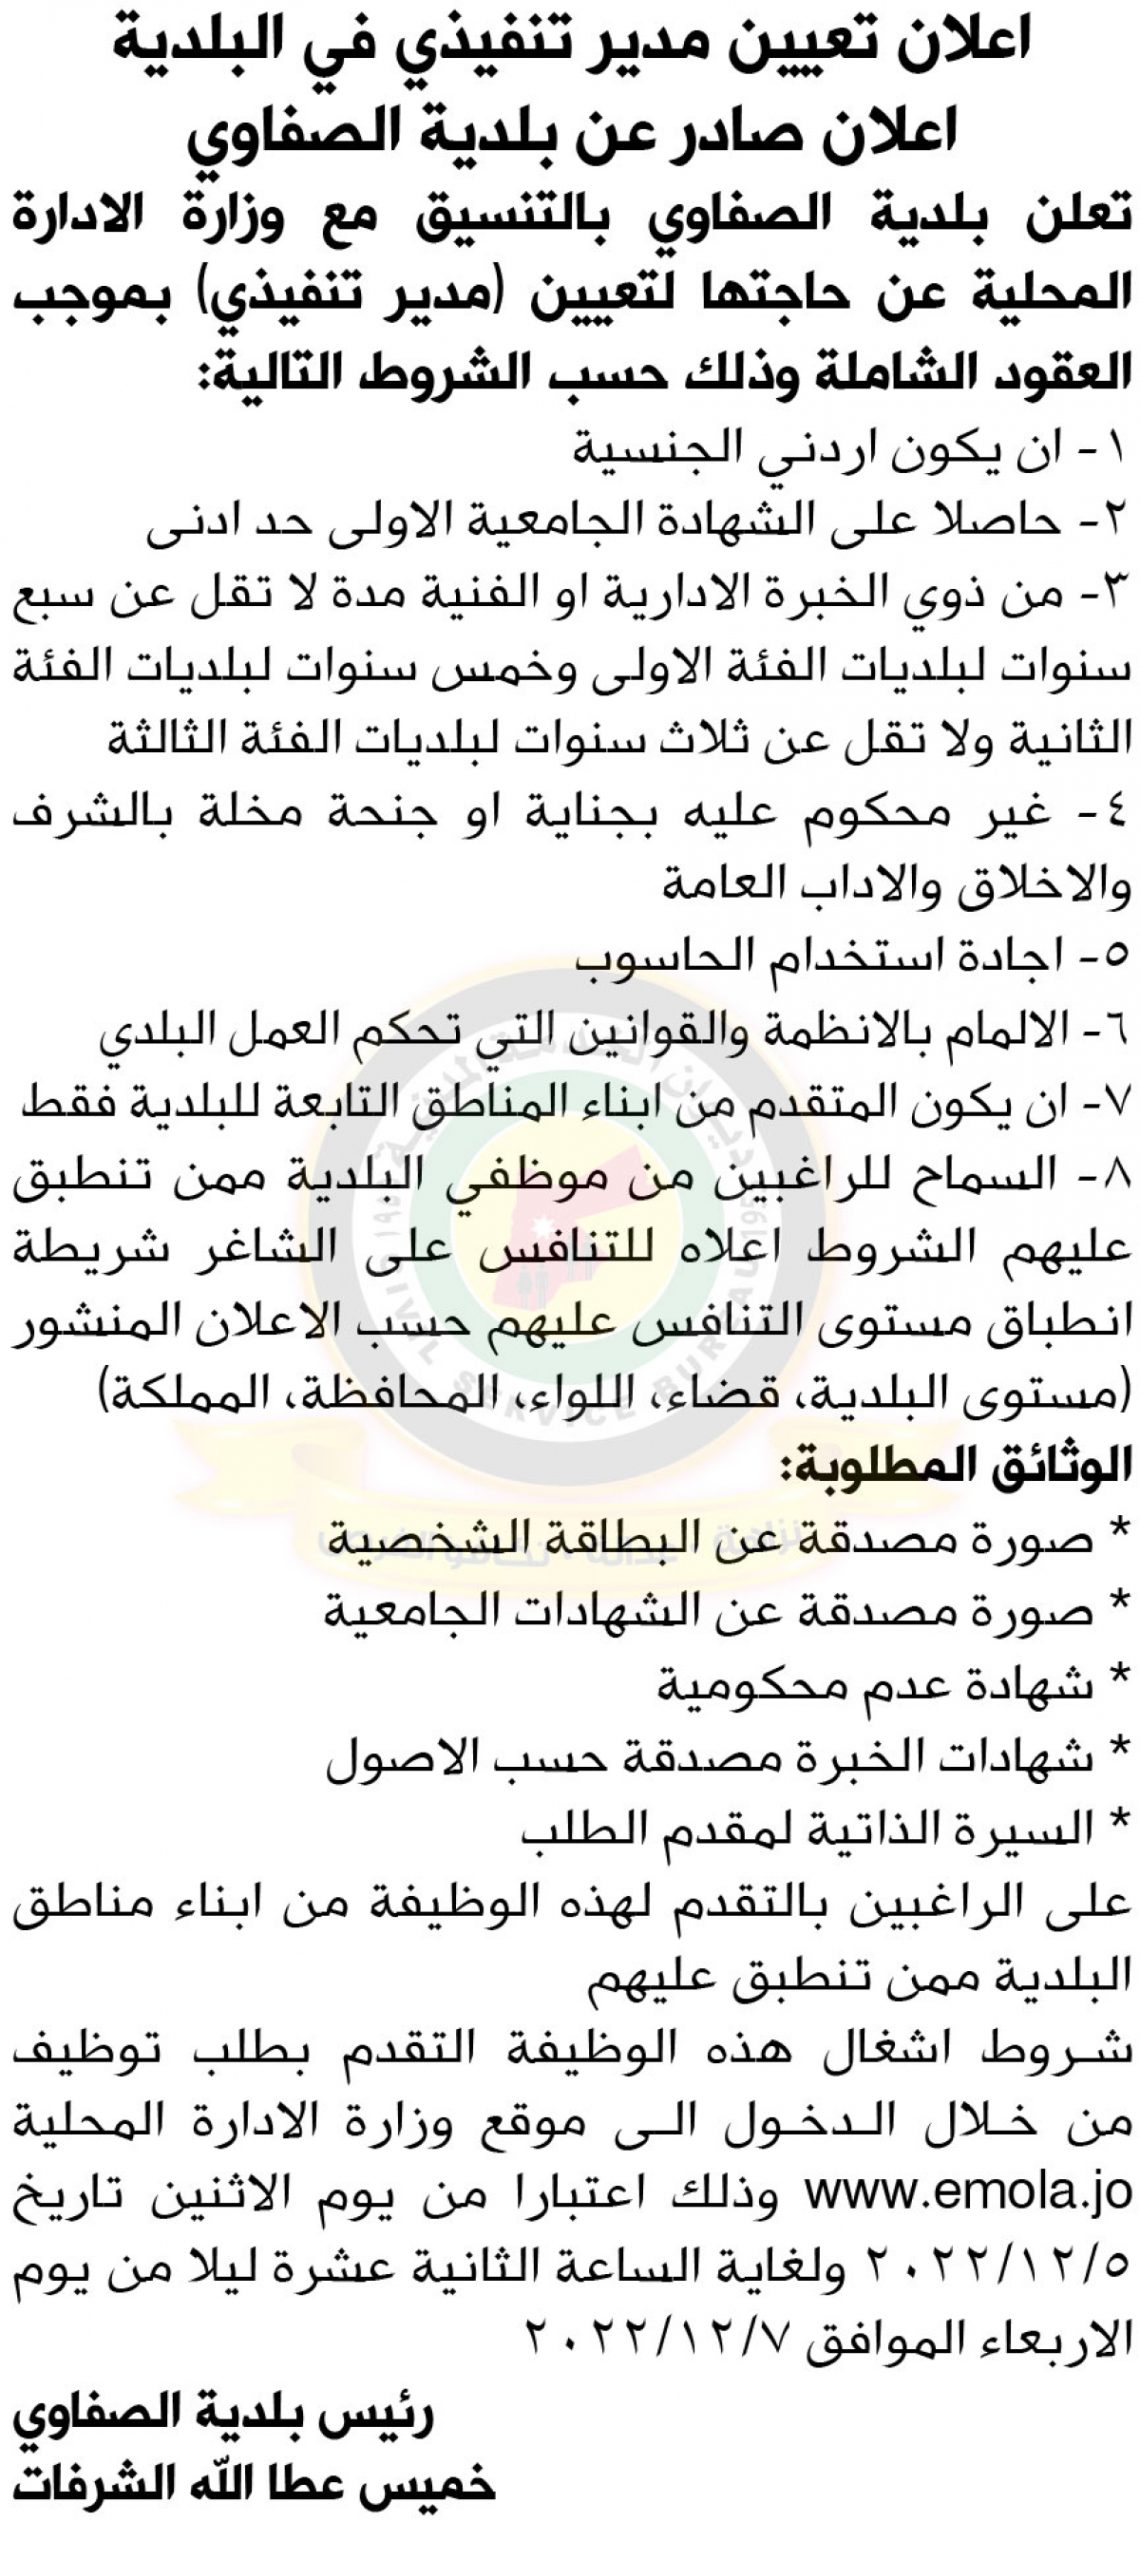 اعلان توفر شاغر مدير تنفيذي صادر عن بلدية الصفاوي